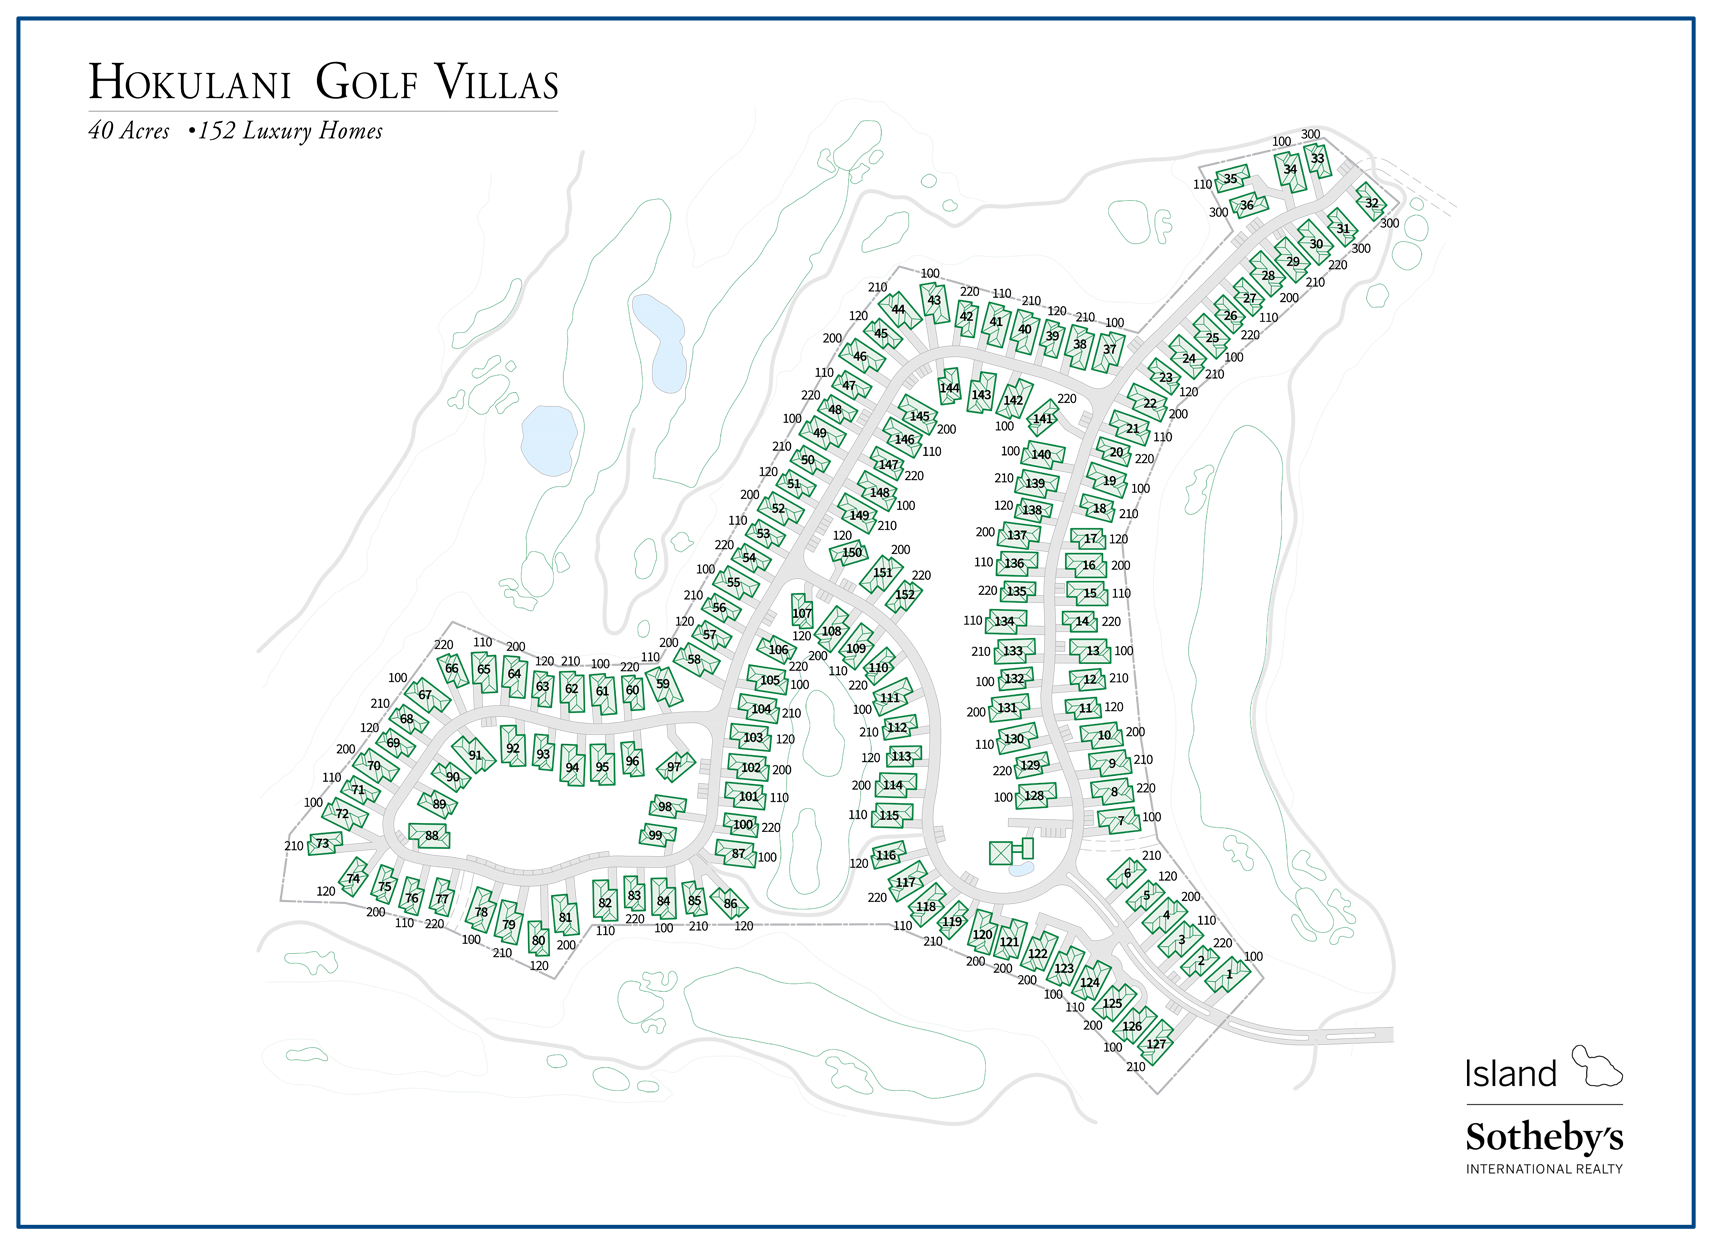 hokulani golf villas map detailed 2018